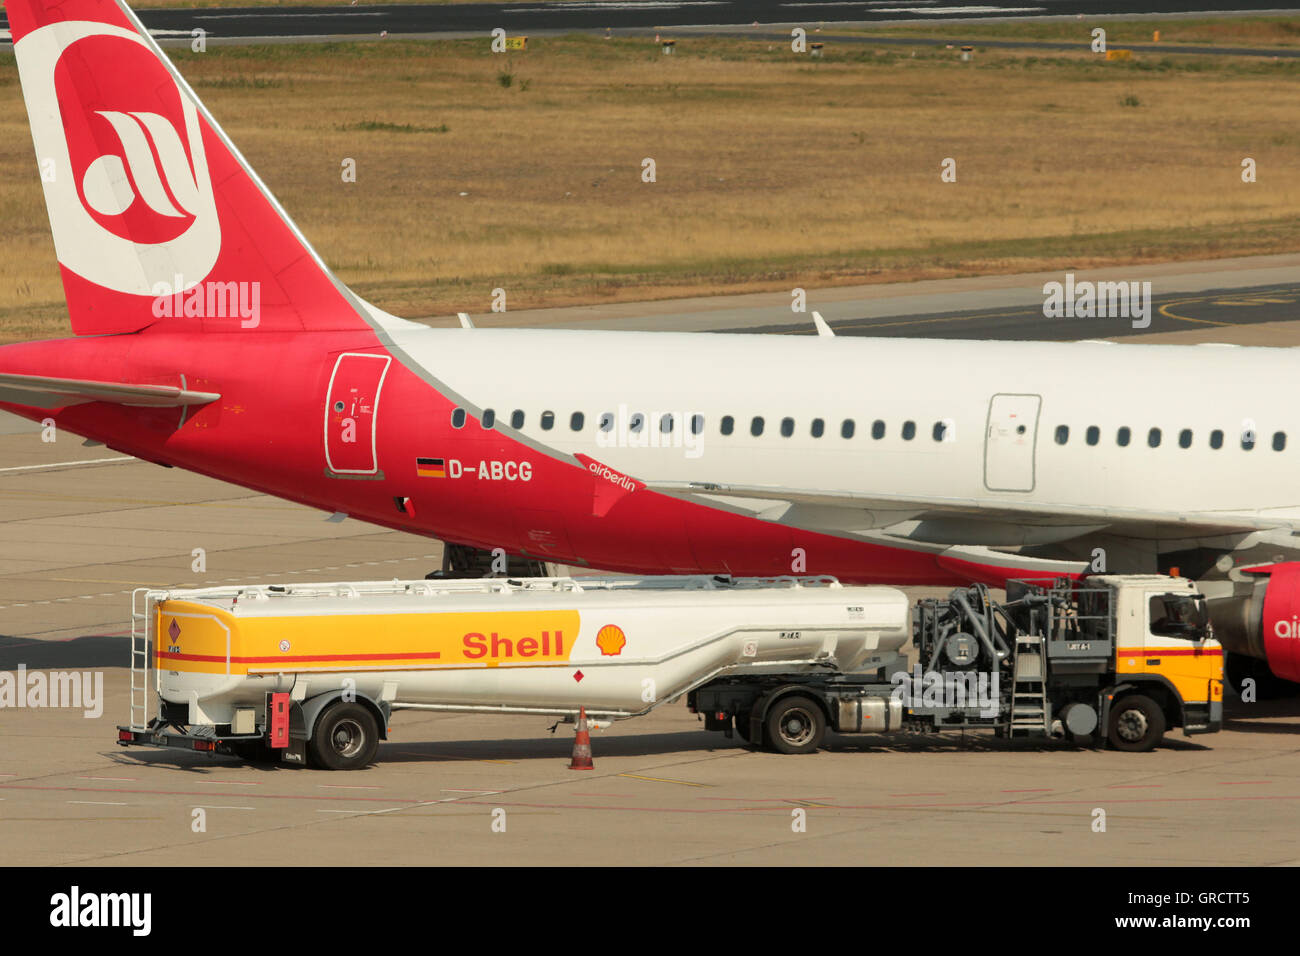 Airberlin Airbus mit der Registrierung D-Abcg mit Kraftstoff-LKW am Flughafen Berlin-Tegel Txl Stockfoto